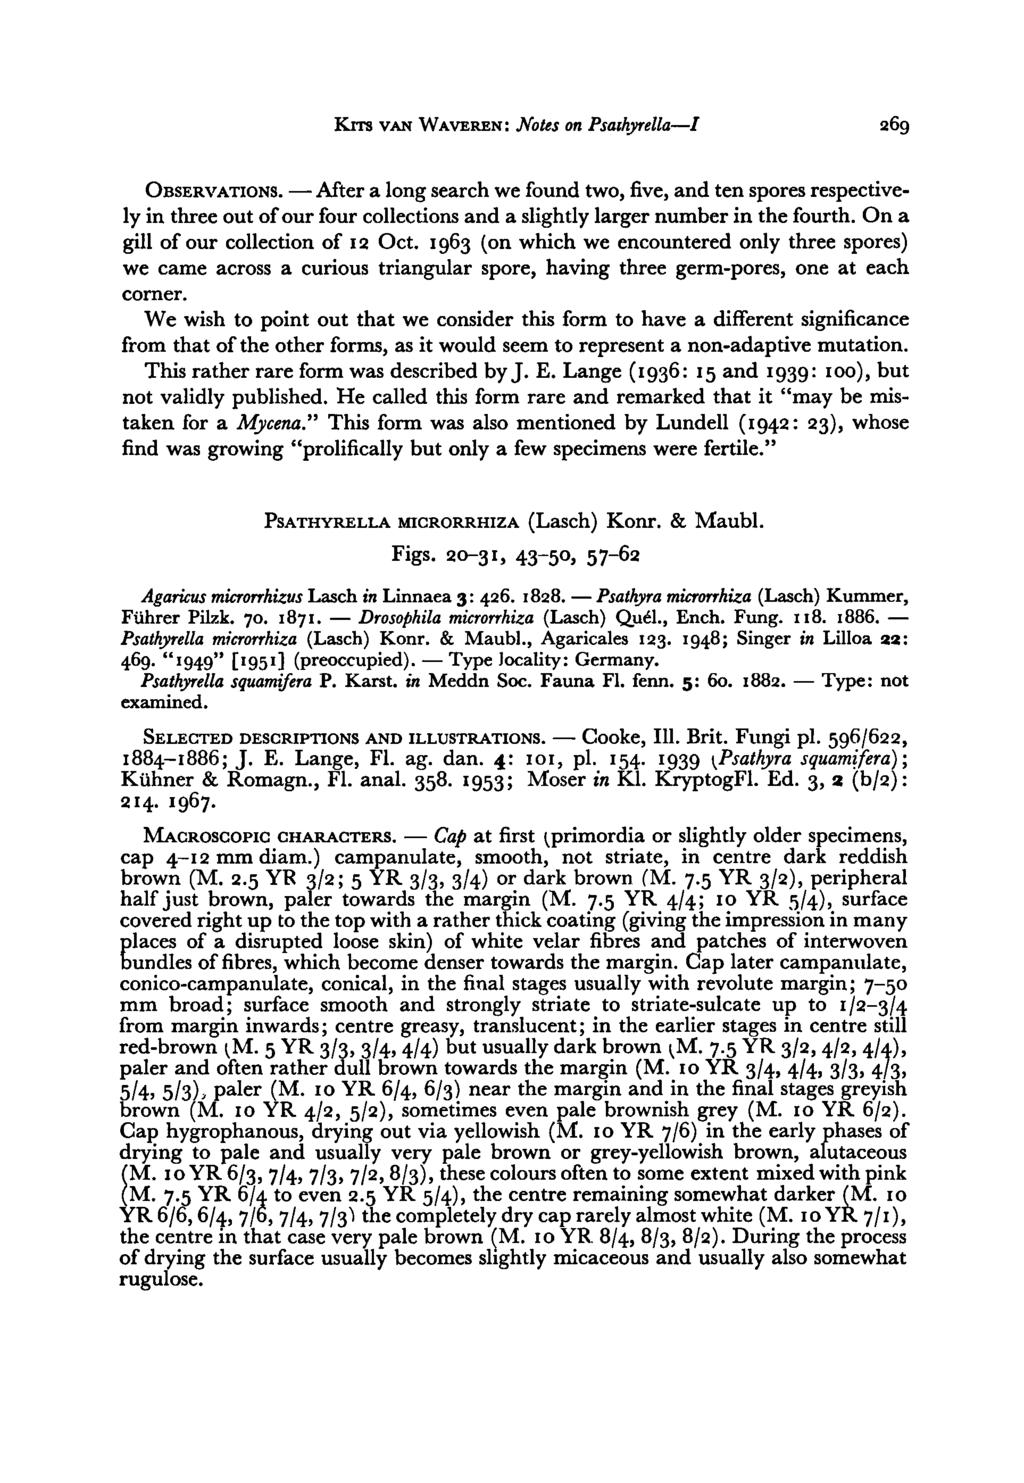 Drosophila Cap Type Cooke, Kits van Waveren : Notes on Psathyrella / 269 OBSERVATIONS.